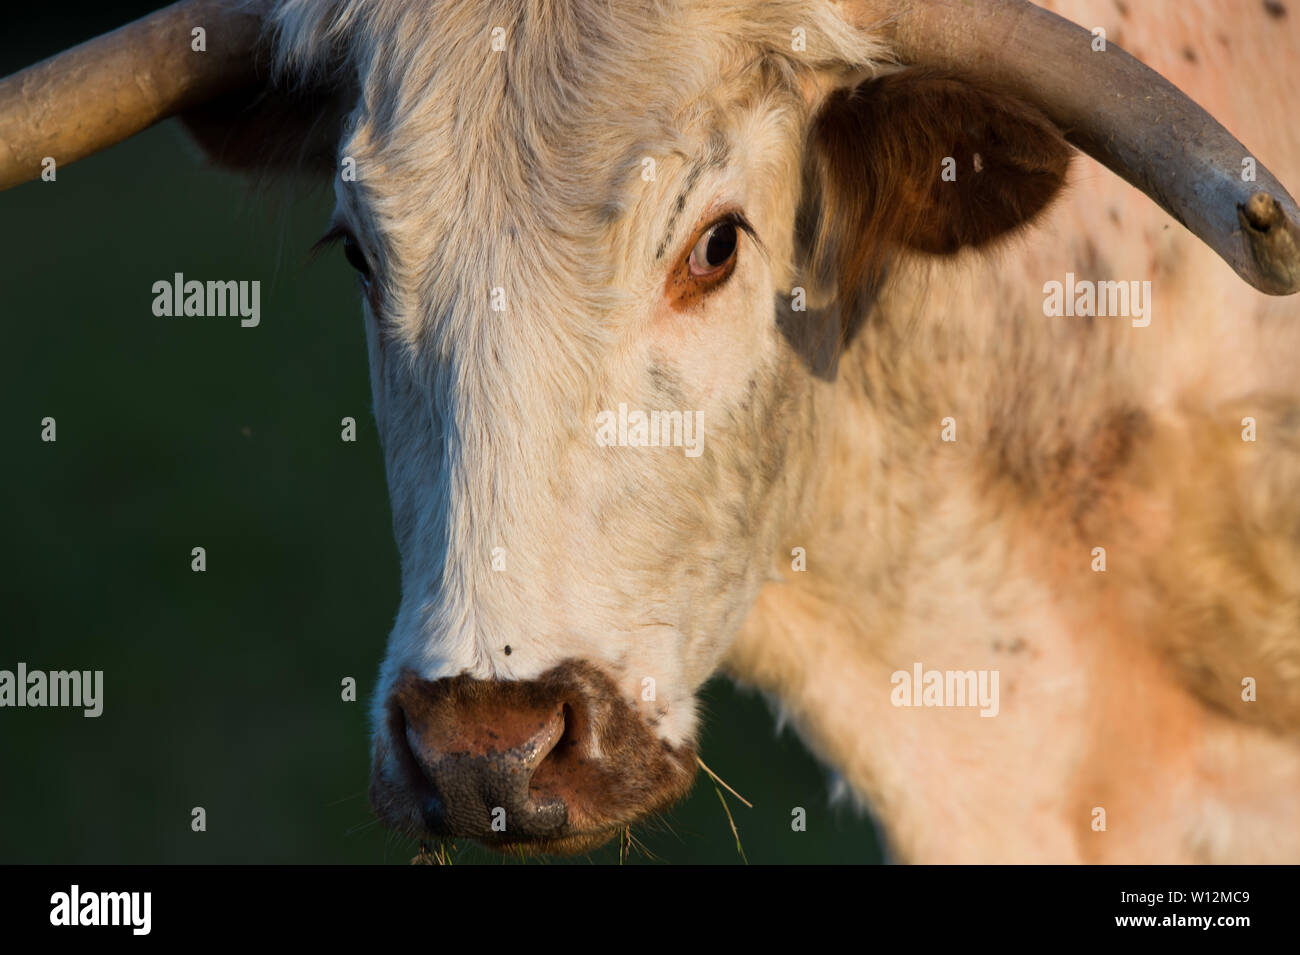 English Longhorn cow in Panshanger Park, Hertford, UK Stock Photo